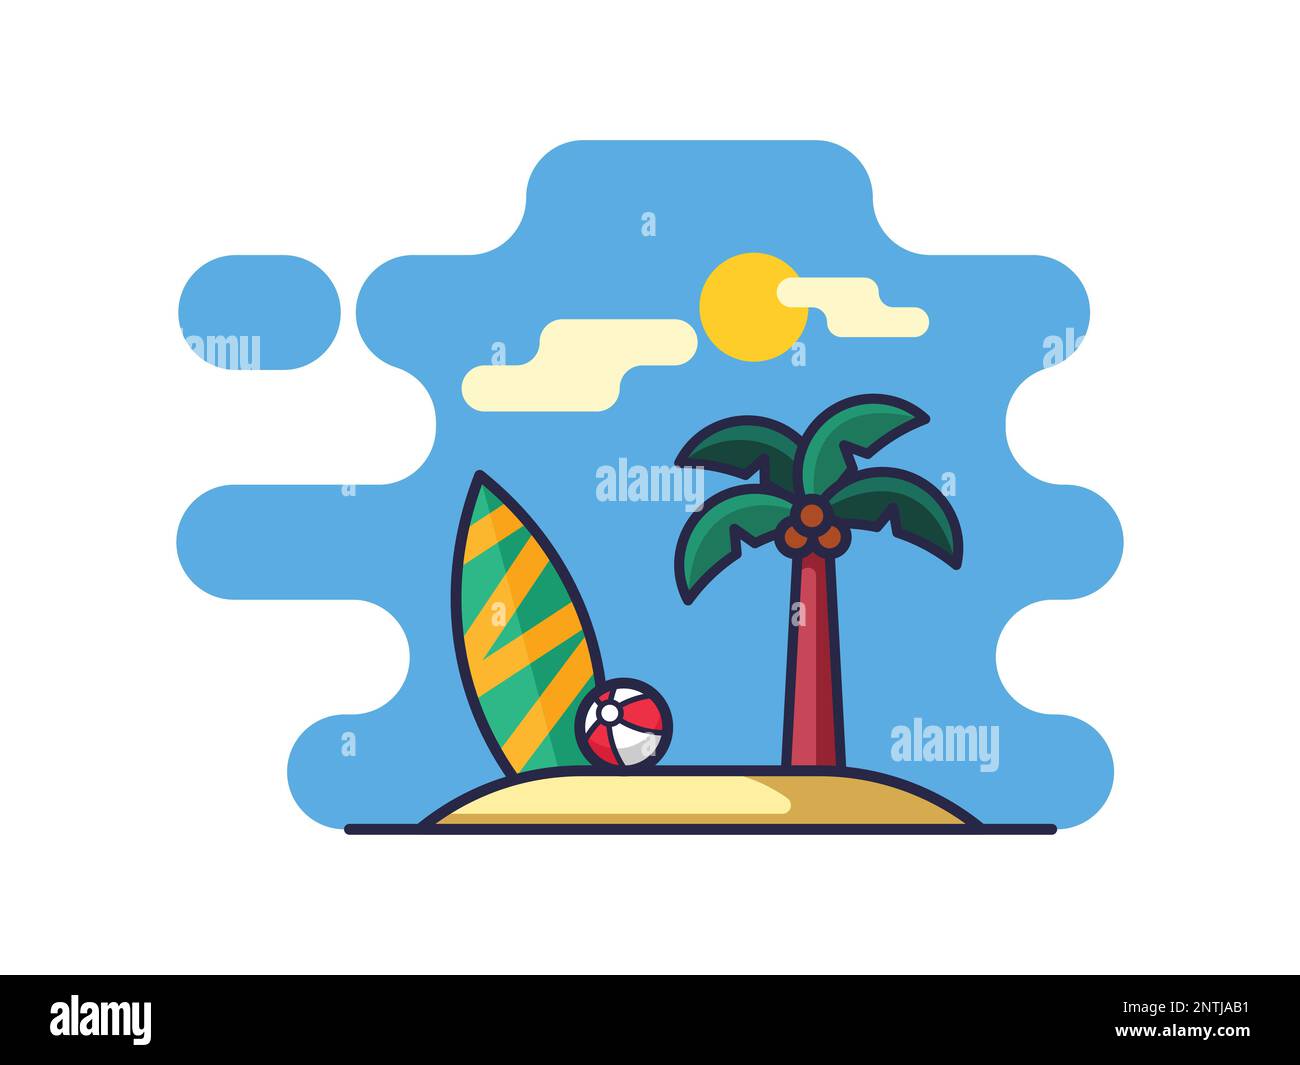 Illustrazione della spiaggia e dell'isola tropicale con immagine vettoriale di palme e tavole da surf isolate su sfondo bianco. Illustrazione Vettoriale